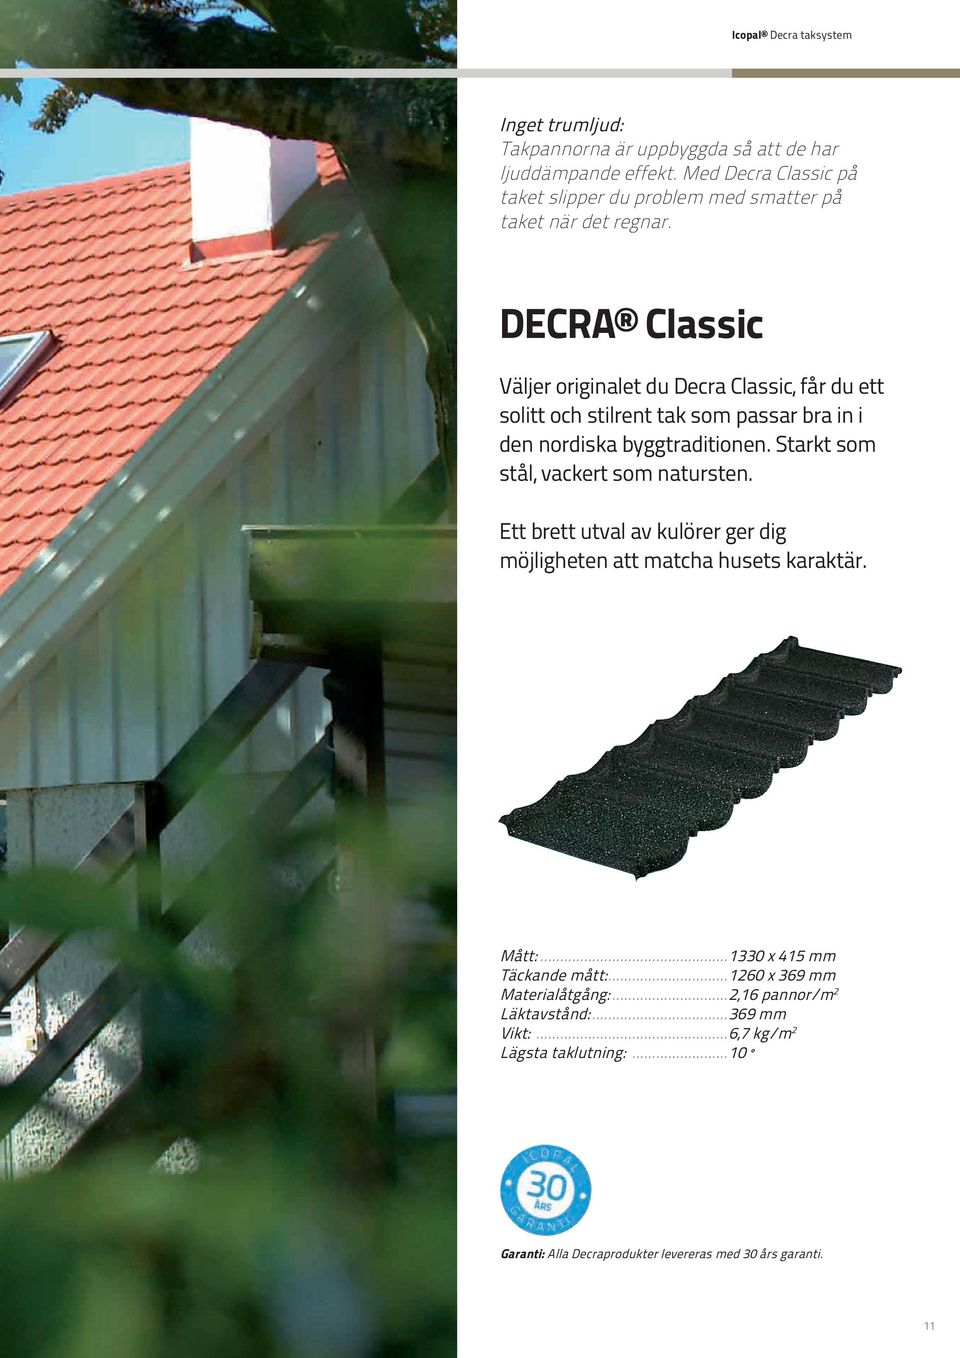 DECRA Classic Väljer originalet du Decra Classic, får du ett solitt och stilrent tak som passar bra in i den nordiska byggtraditionen.